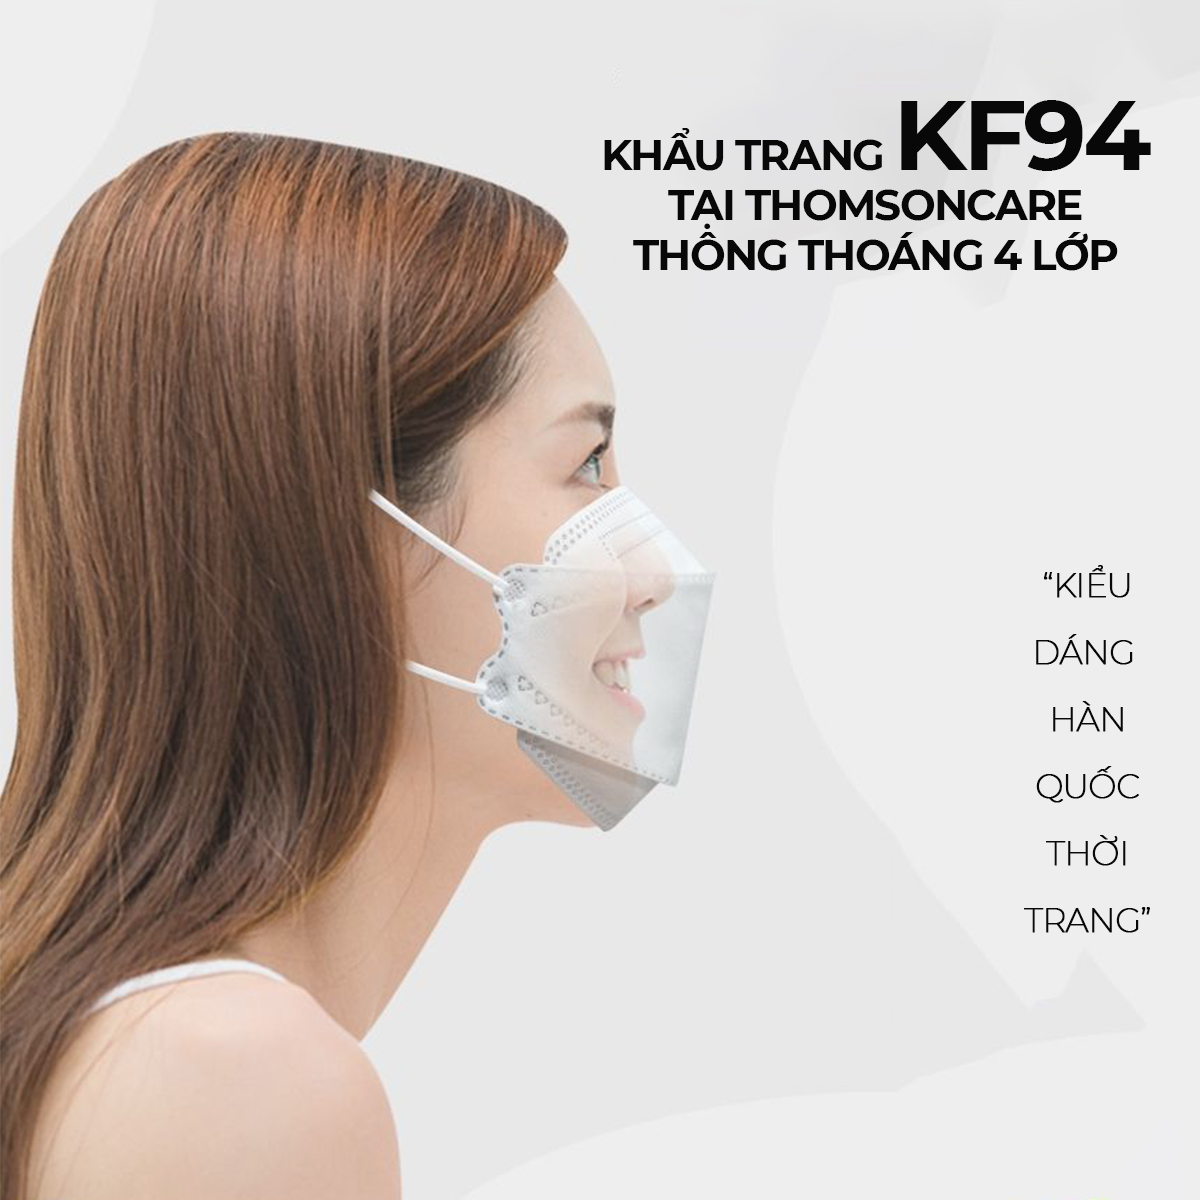 Kf94 Thùng 300 chiếc Khẩu trang KF94 Loka trắng công nghệ Hàn Quốc kháng khuẩn kt kf 94 y tế, chống lọc bụi khau trang 4D khẩu trang ôm khít, an toàn cho mọi nhà